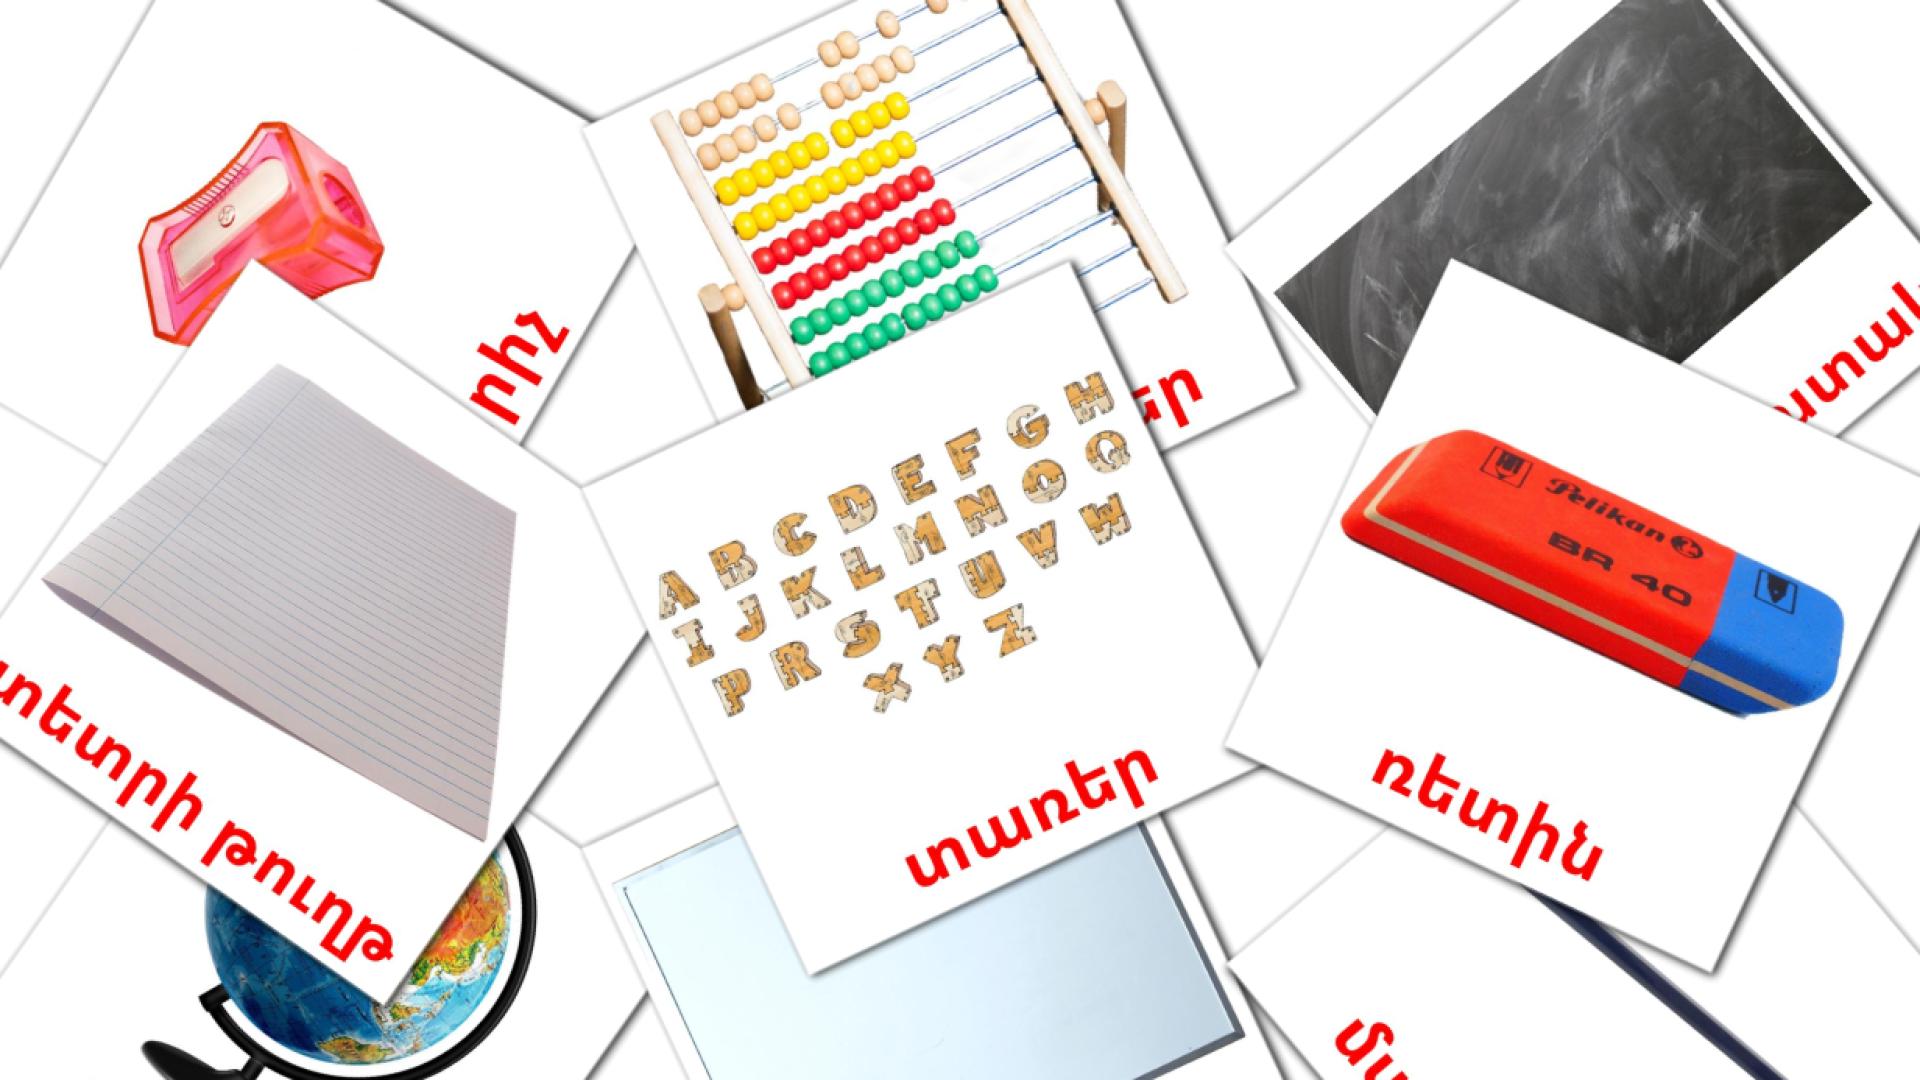 Klasobjecten - armeensee woordenschatkaarten